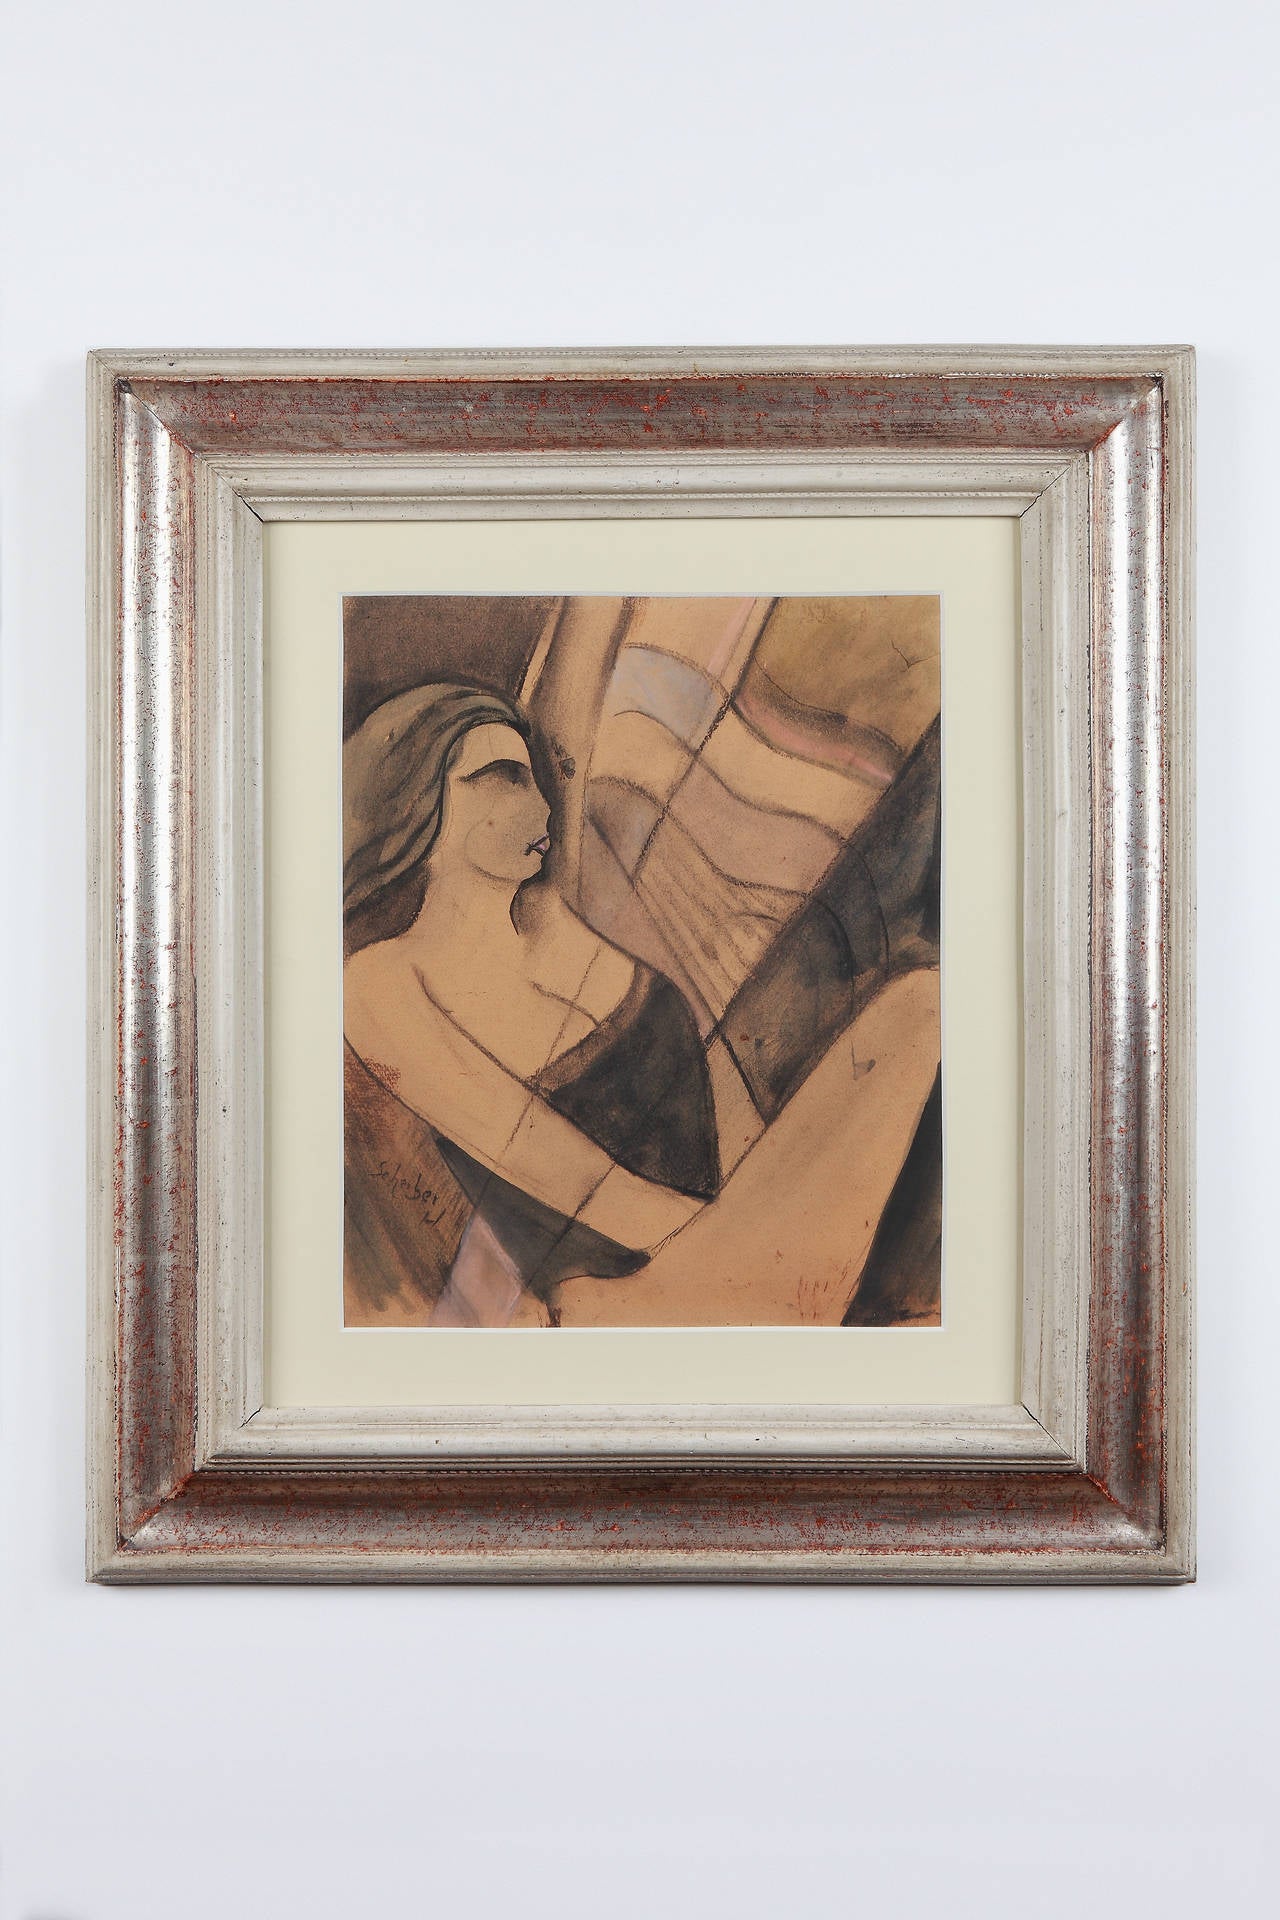 Großer Scheiber-Pastell „Sailing“, um 1930 – Painting von Hugó Scheiber